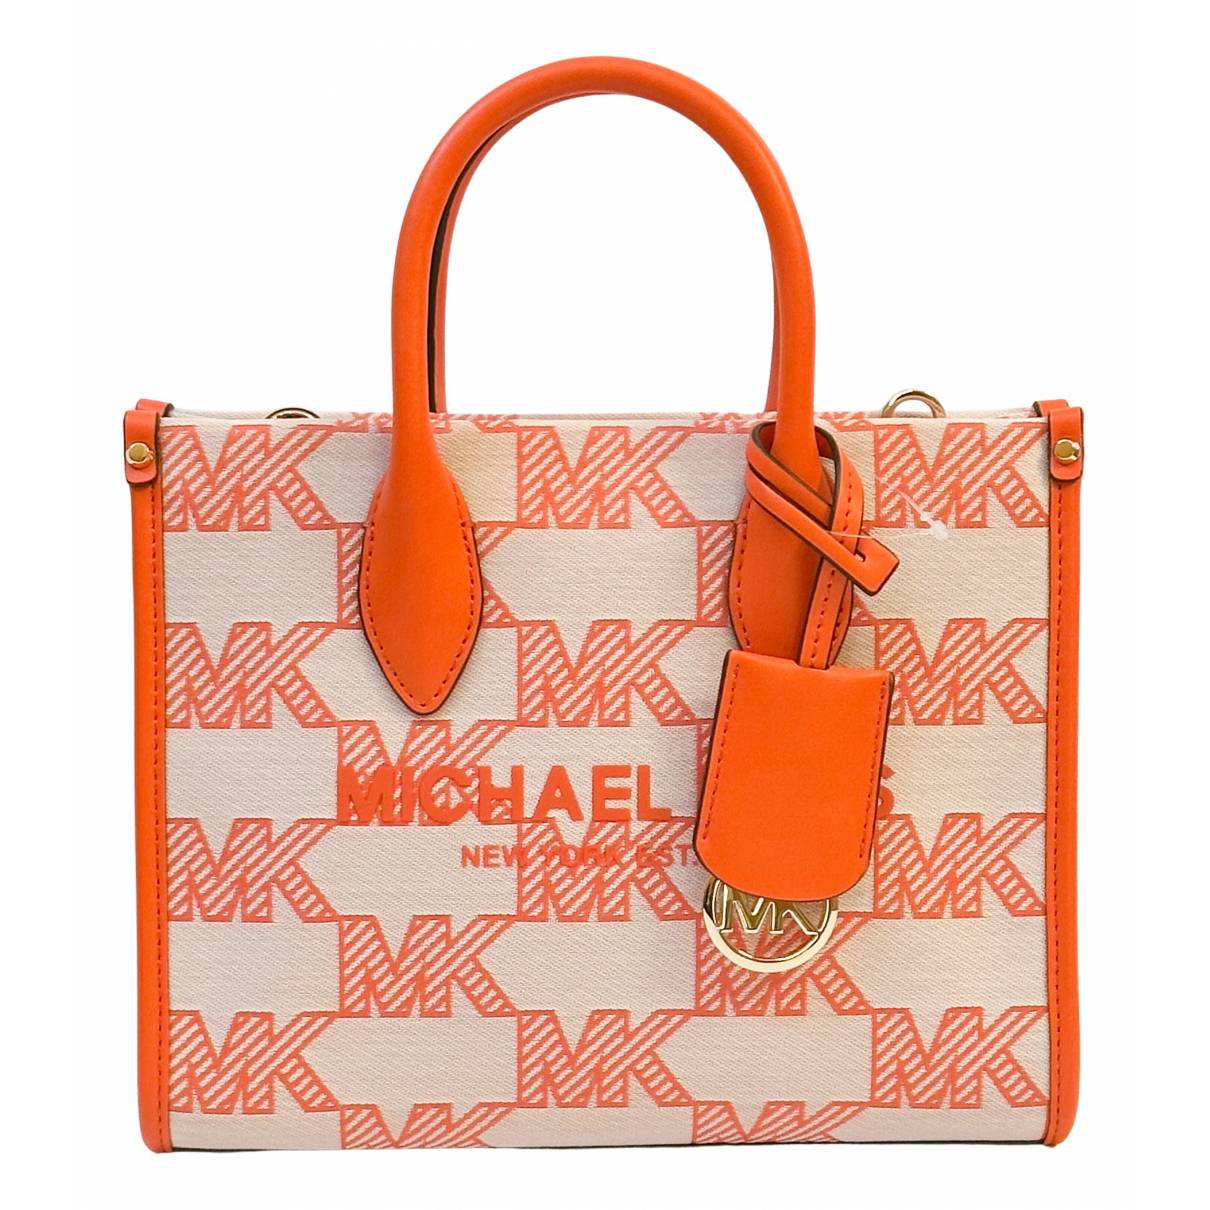 Crossbody Bags, Women's Handbags, Michael Kors